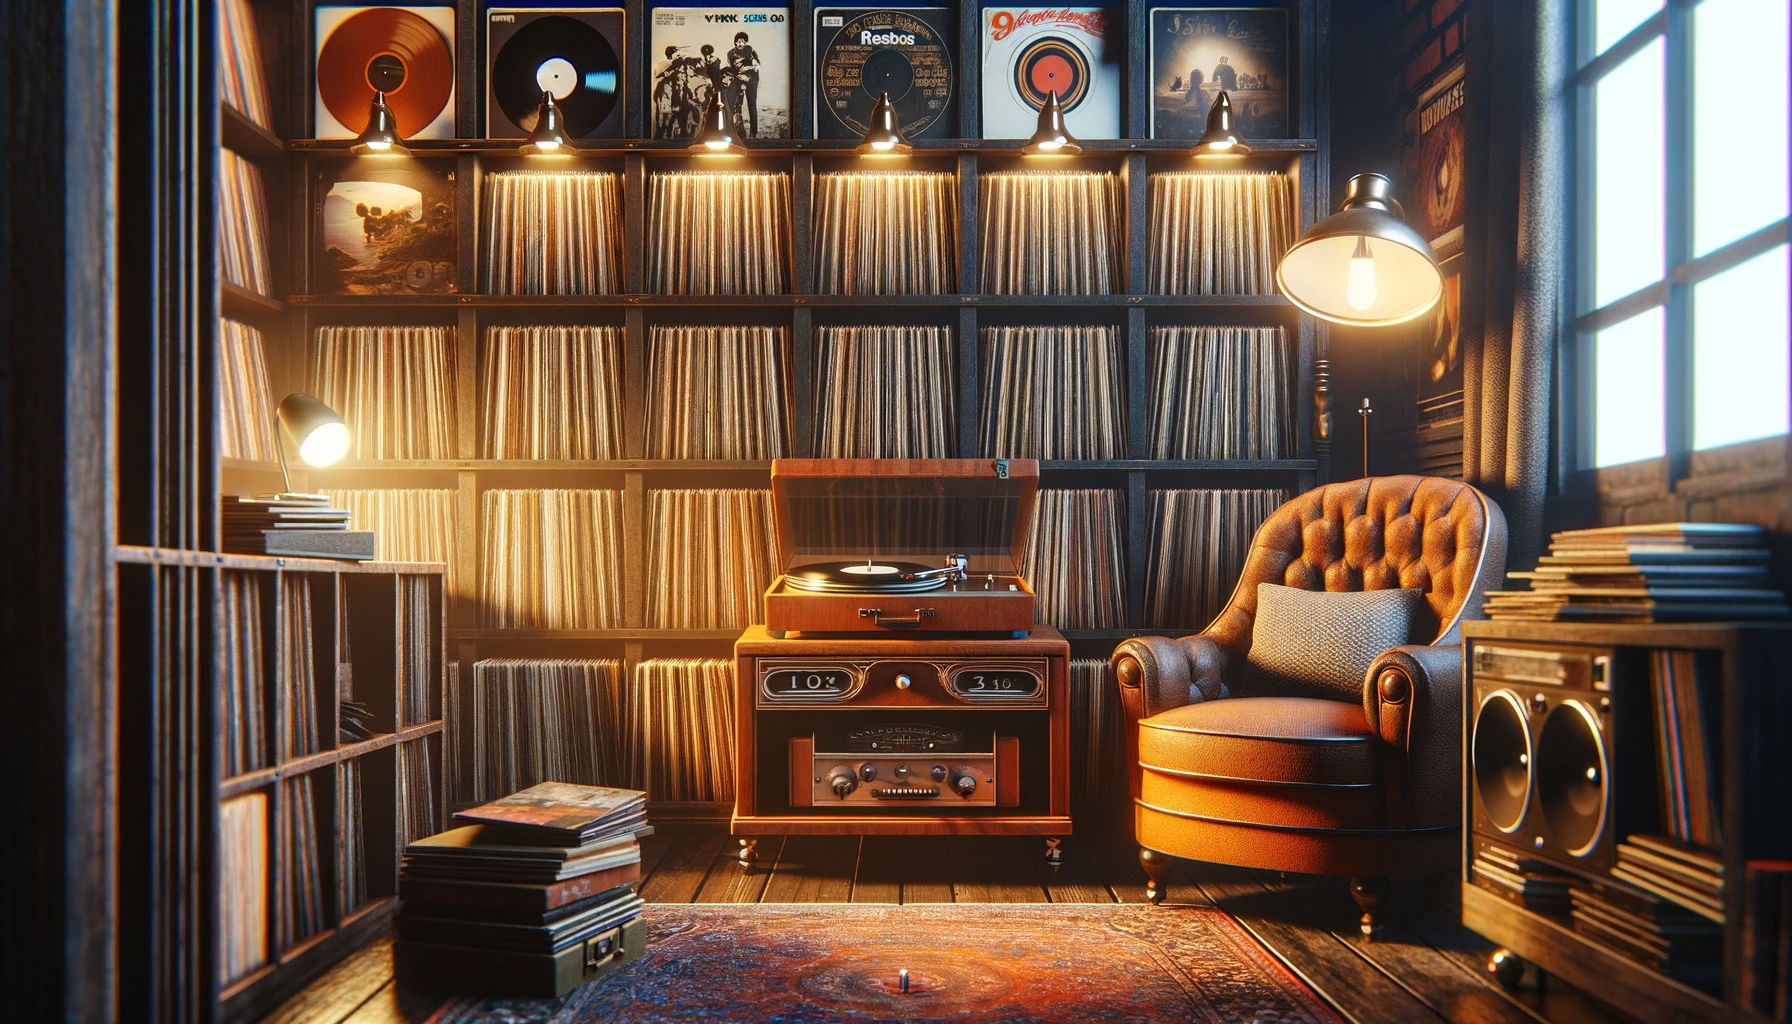 Sala aconchegante estilo vintage com prateleiras cheias de discos de vinil, toca-discos de madeira e poltrona confortável